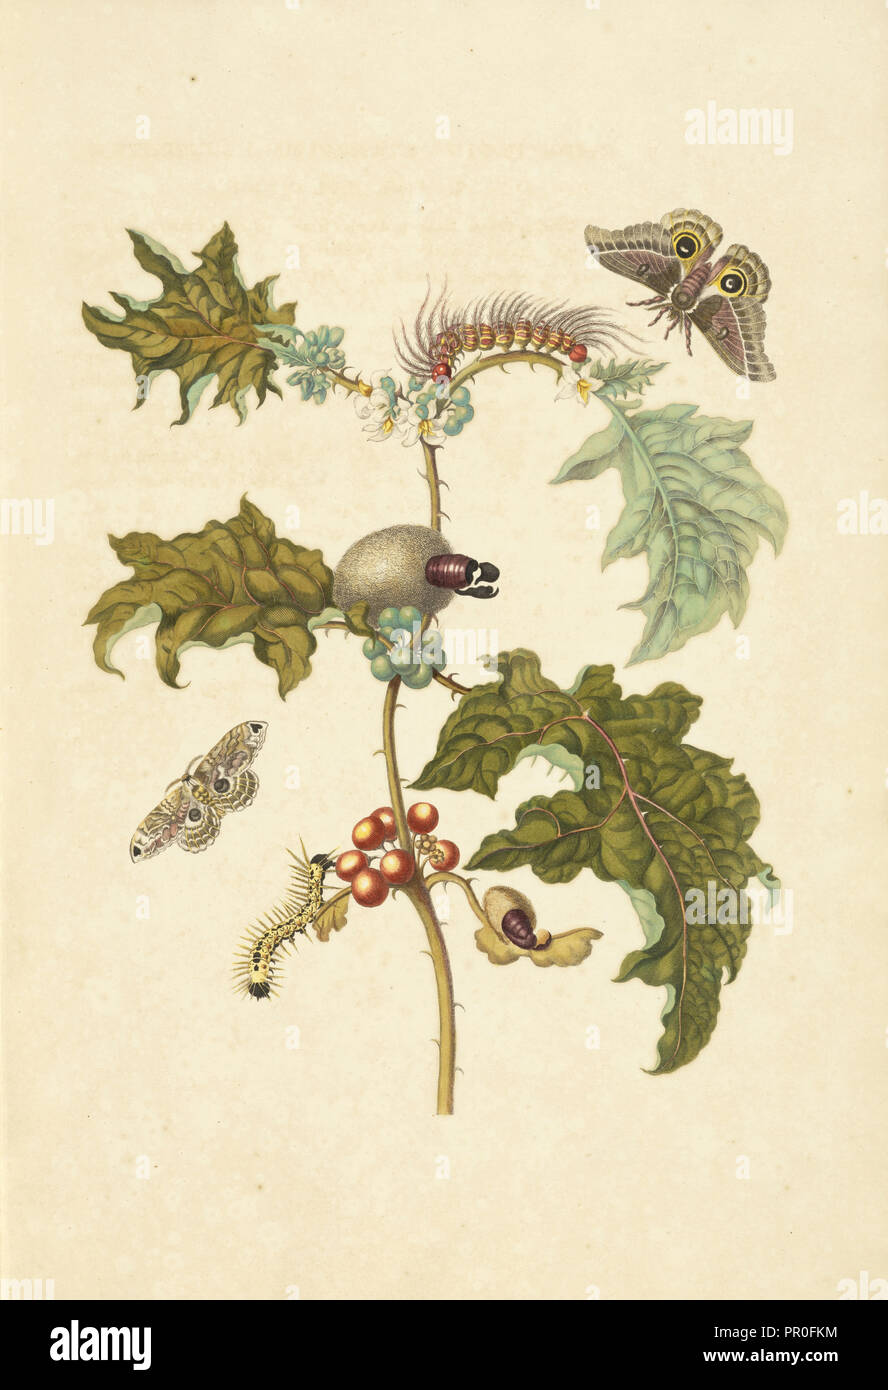 Thistle come pianta, Solanum stramoniifolium, con tarma della specie Automeris, Molippa nibasa tarma e larva non identificato Foto Stock